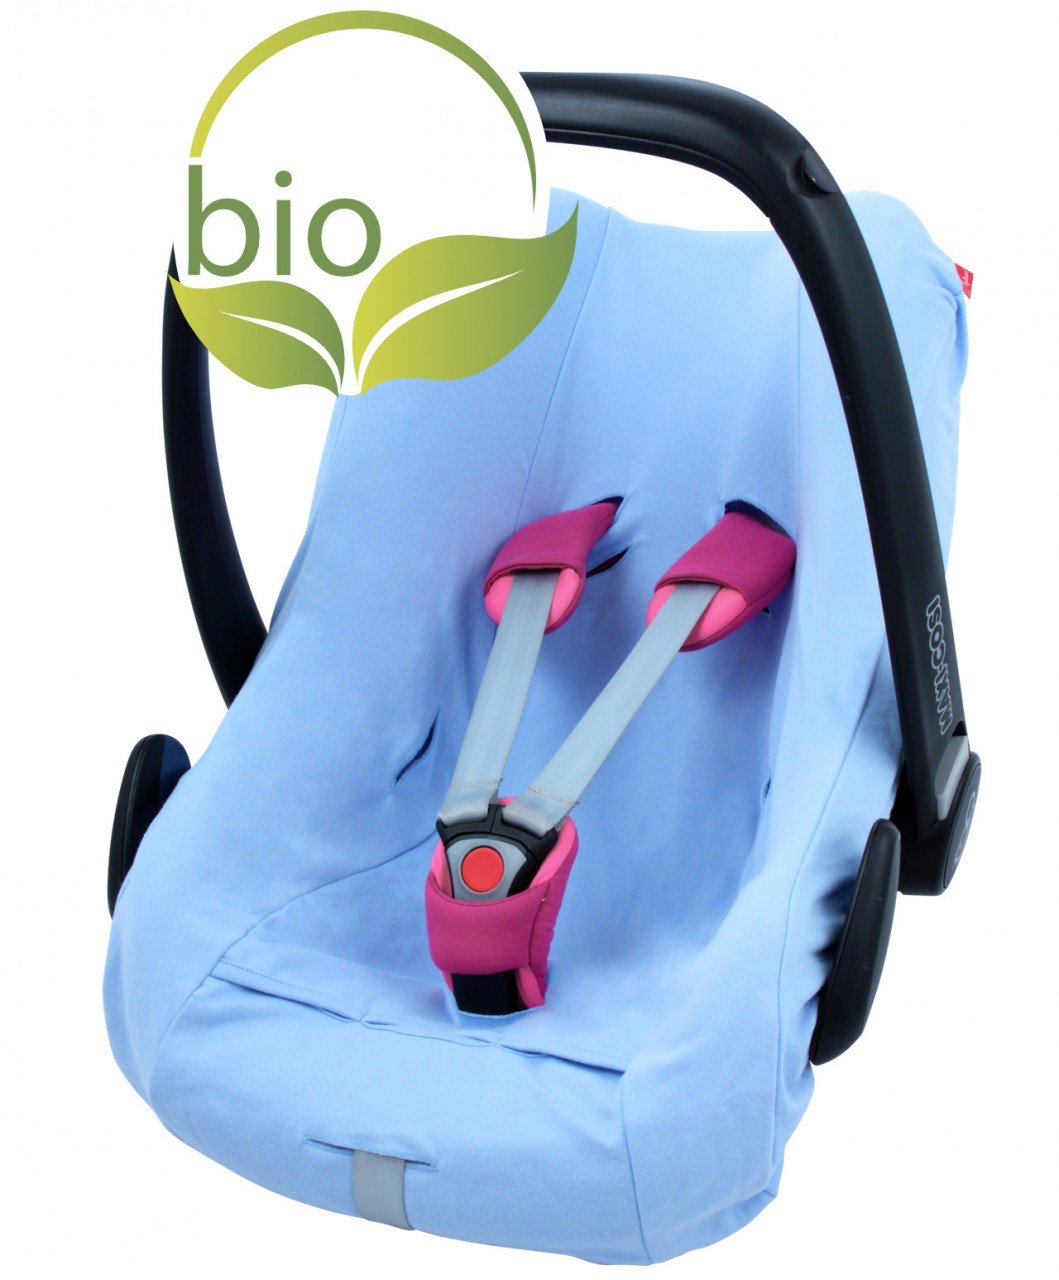 ByBoom - Sommerbezug, Schonbezug für Babyschale aus 100% BIO-Baumwolle, Universal für z.B. Maxi-Cosi, CabrioFix, Pebble, City SPS, Farbe:Blau